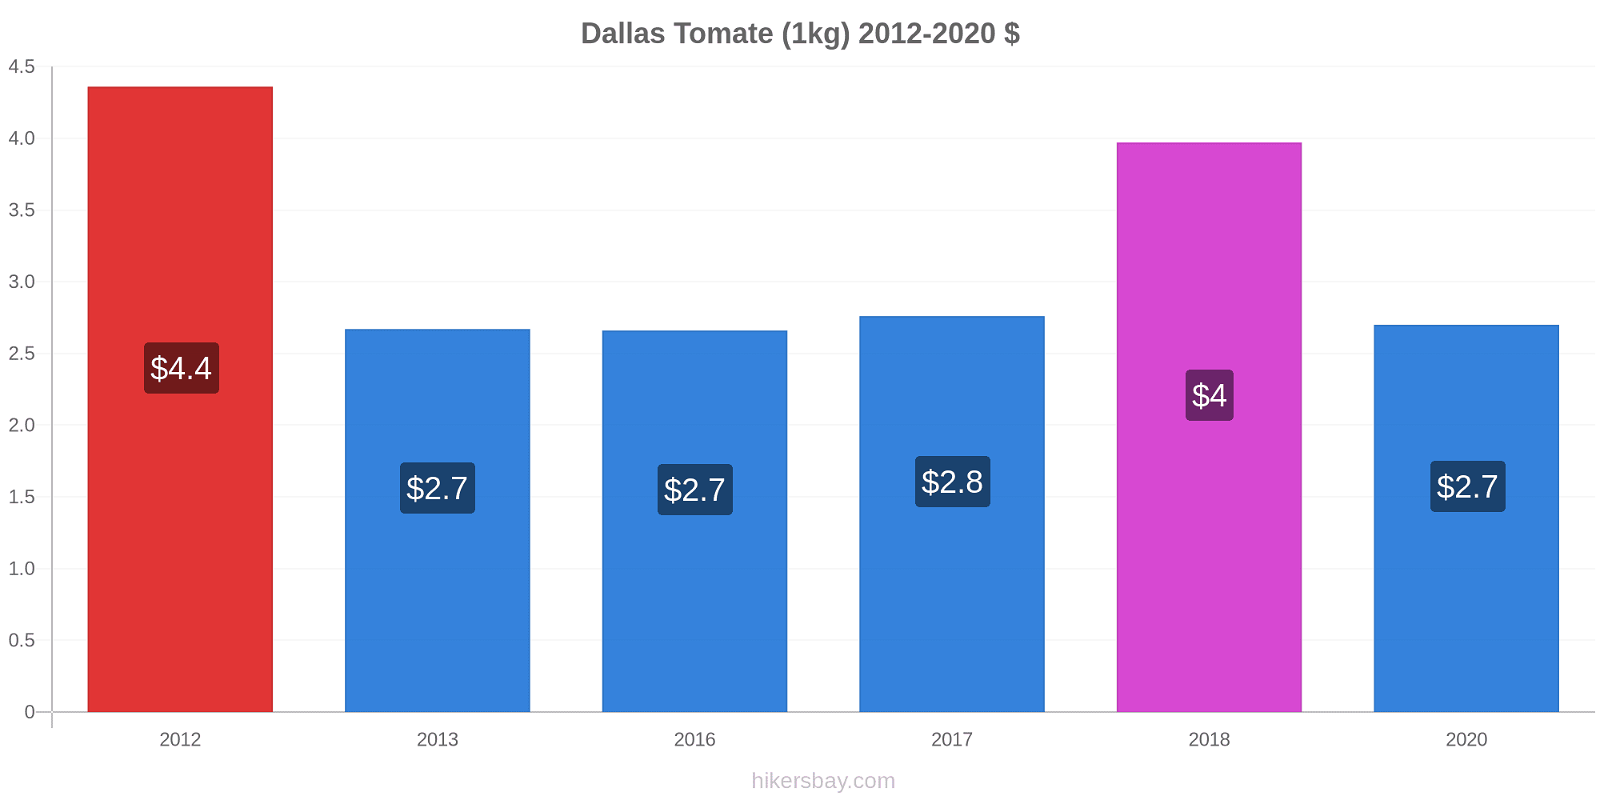 Dallas cambios de precios Tomate (1kg) hikersbay.com